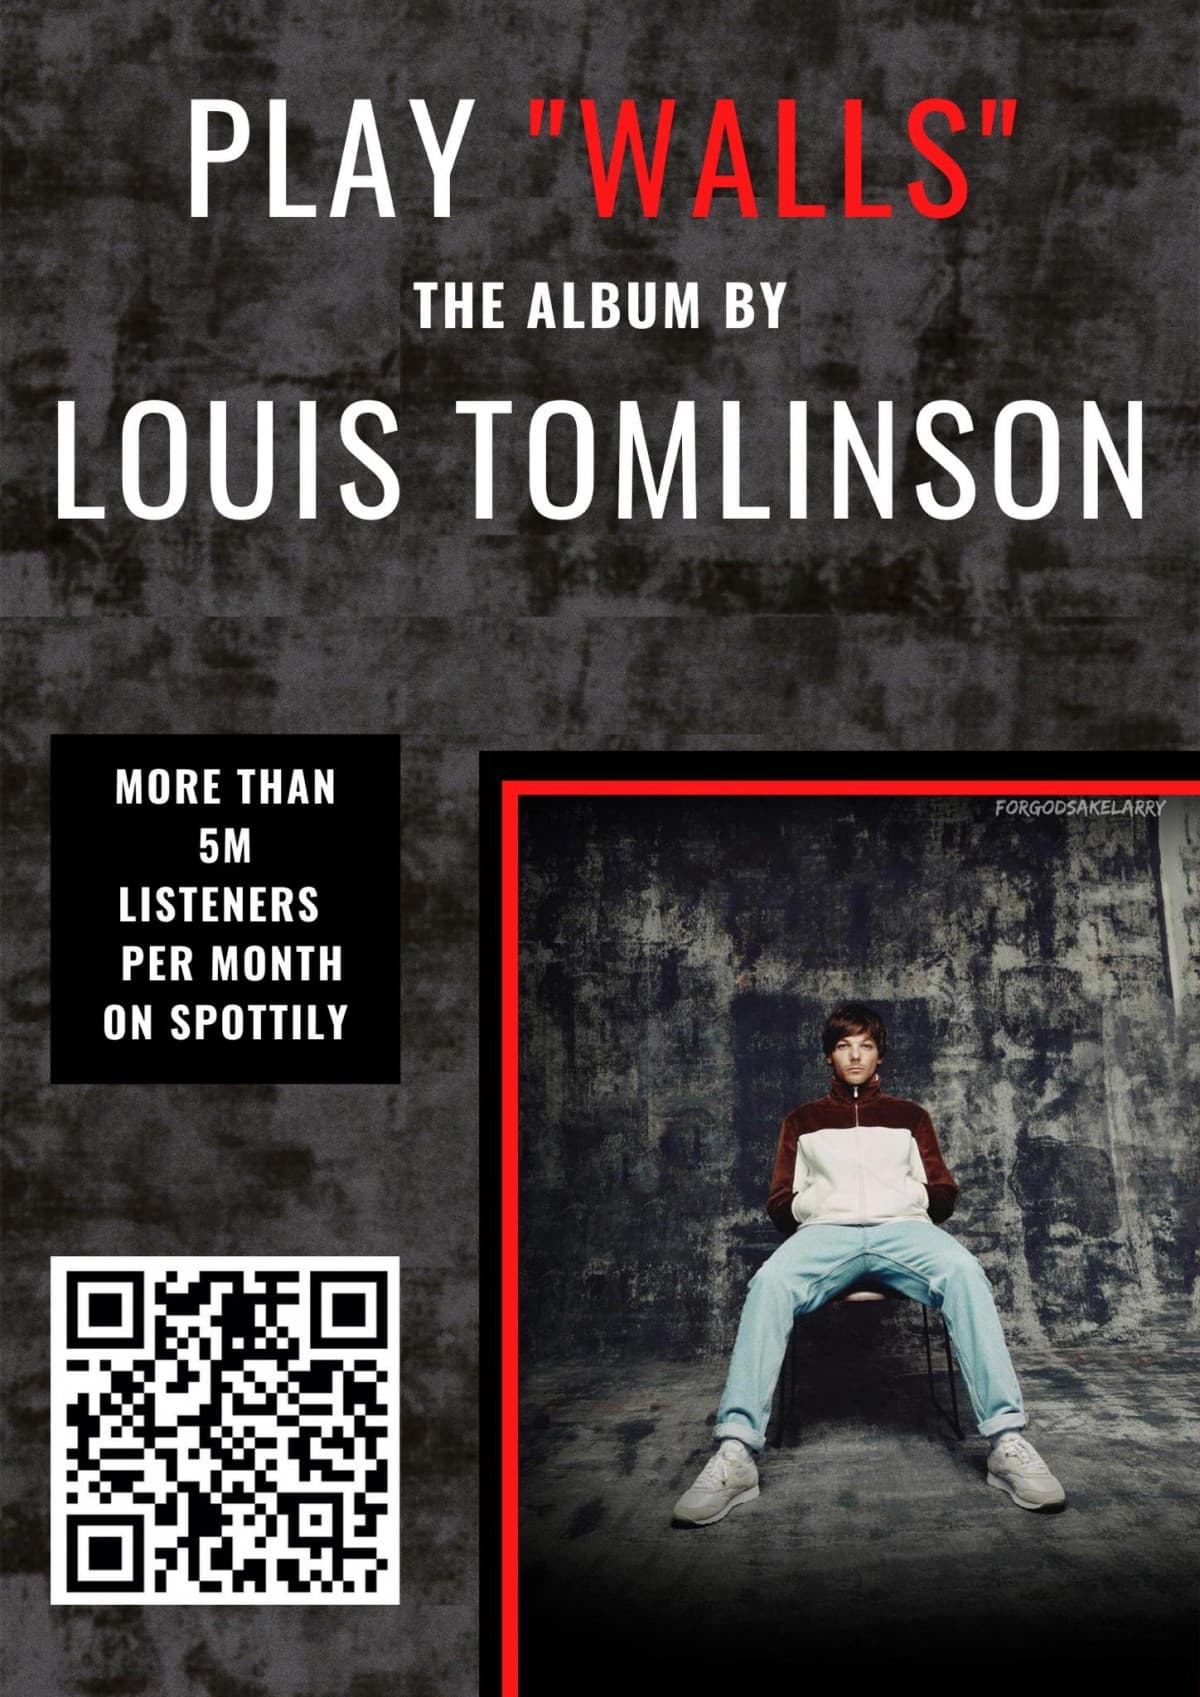 Andate ad ascoltare l'album "Walls" di Louis Tomlinson davvero merita tantissimo?